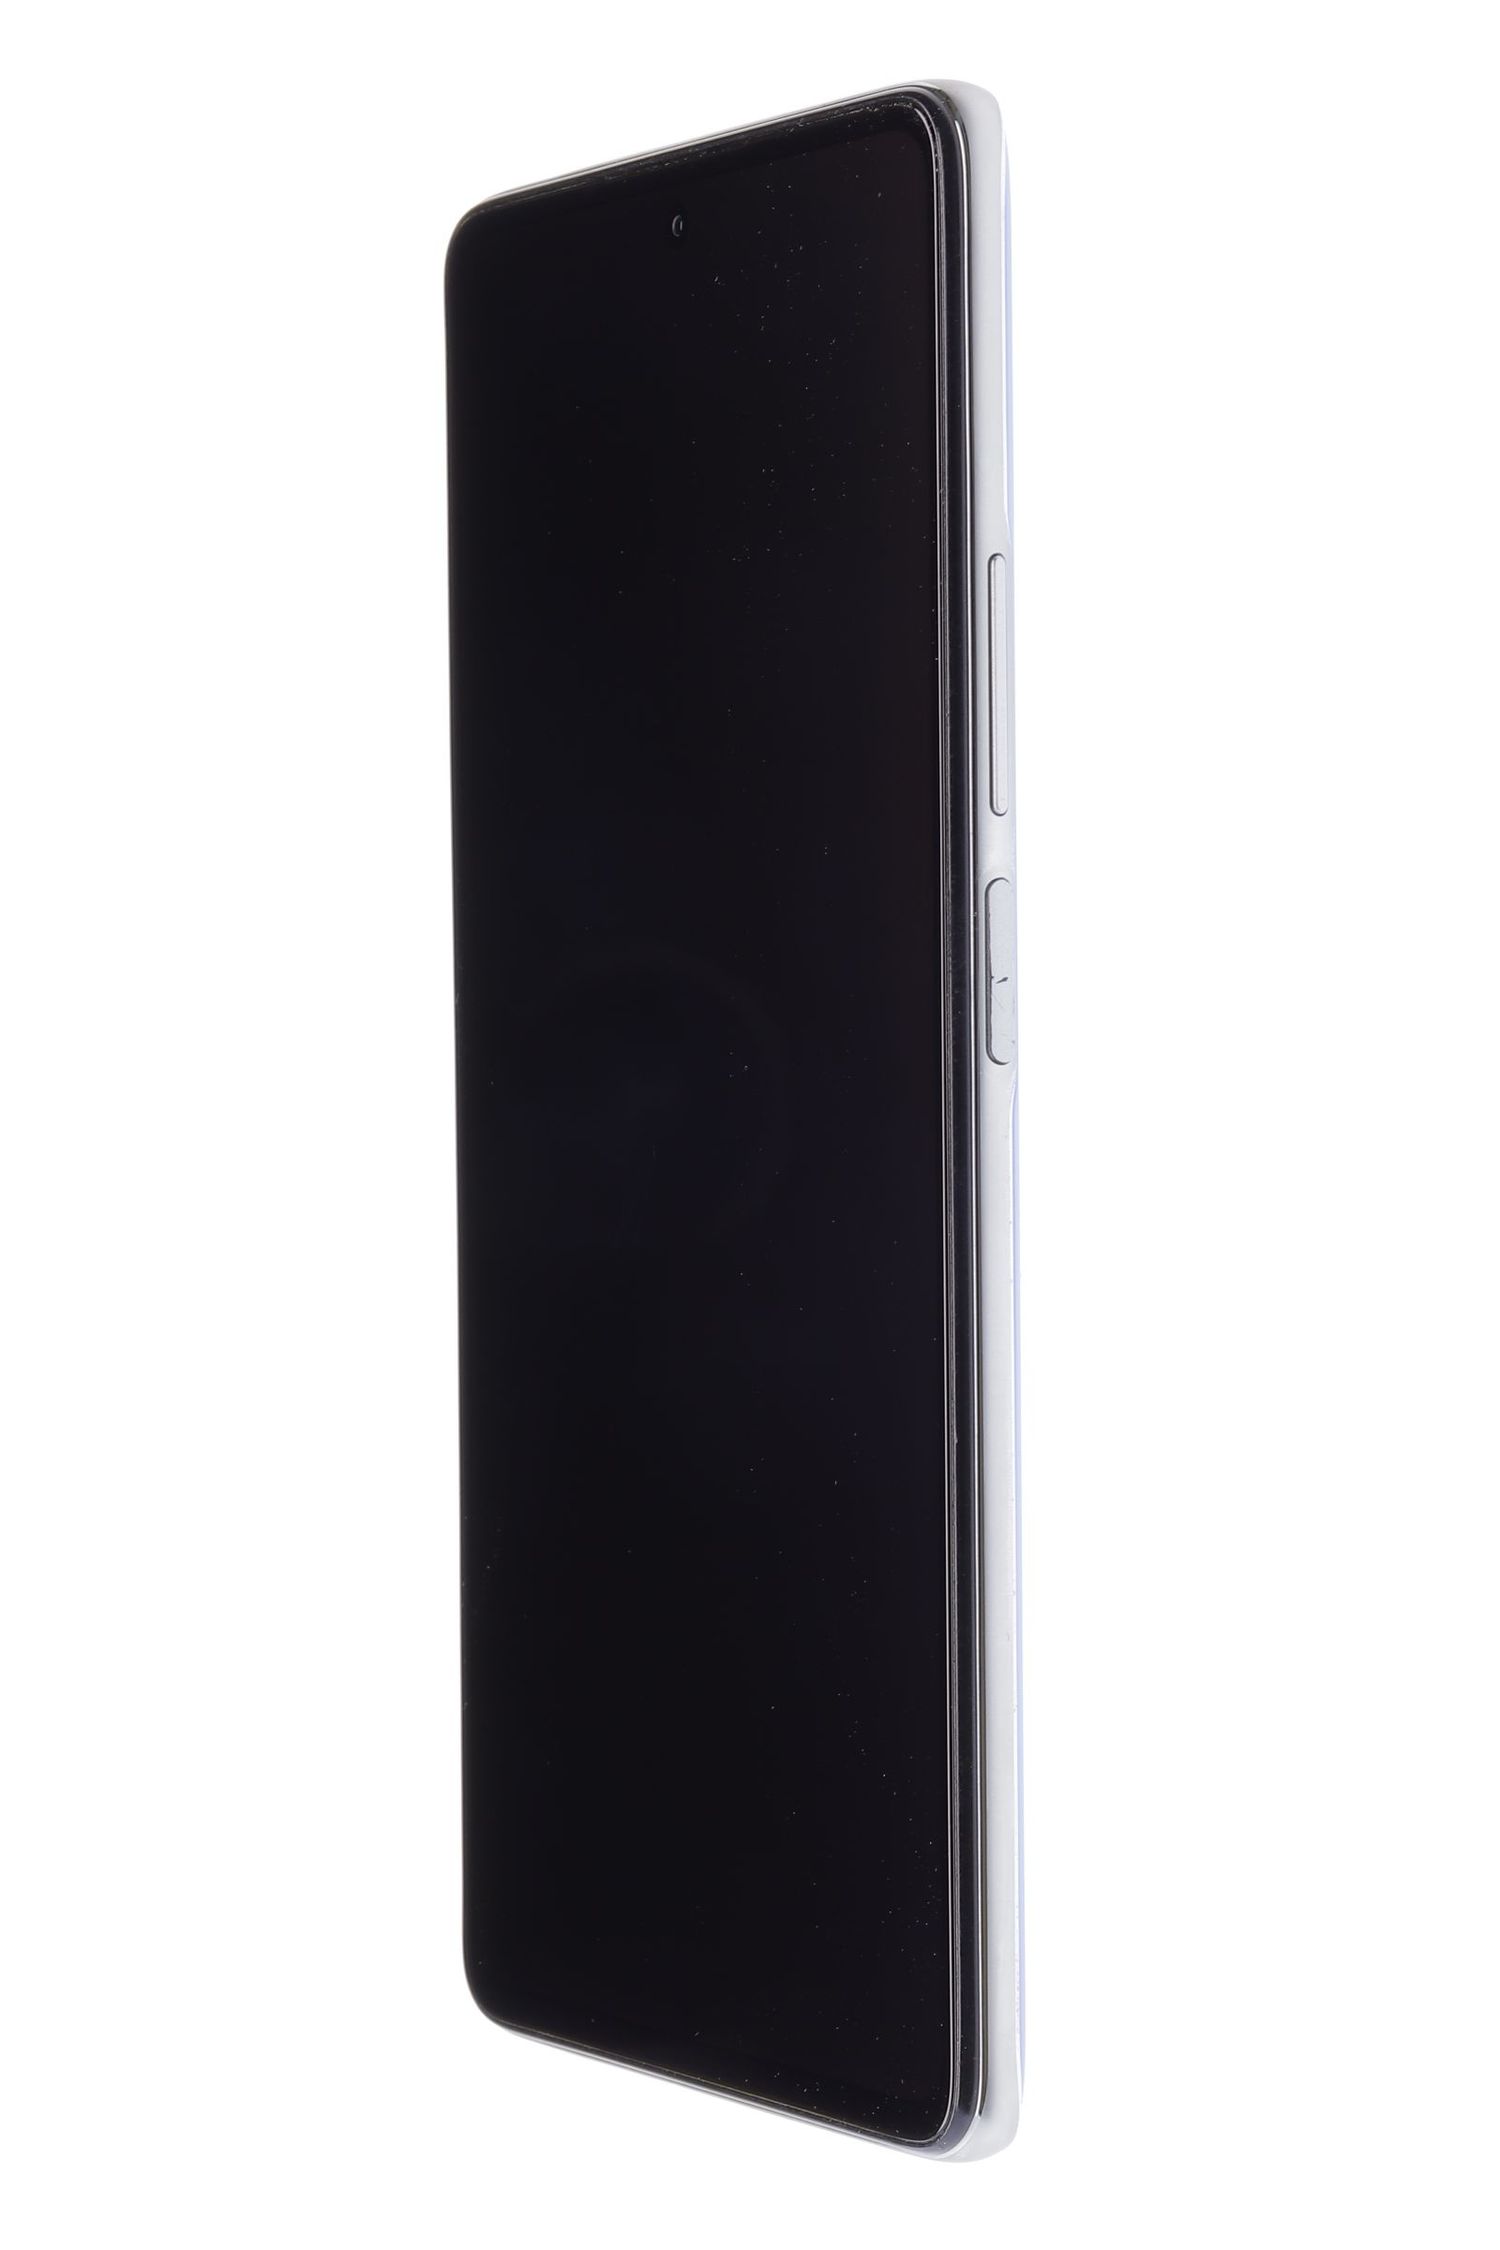 Mobiltelefon Xiaomi Mi 11T Pro 5G, Celestial Blue, 128 GB, Foarte Bun